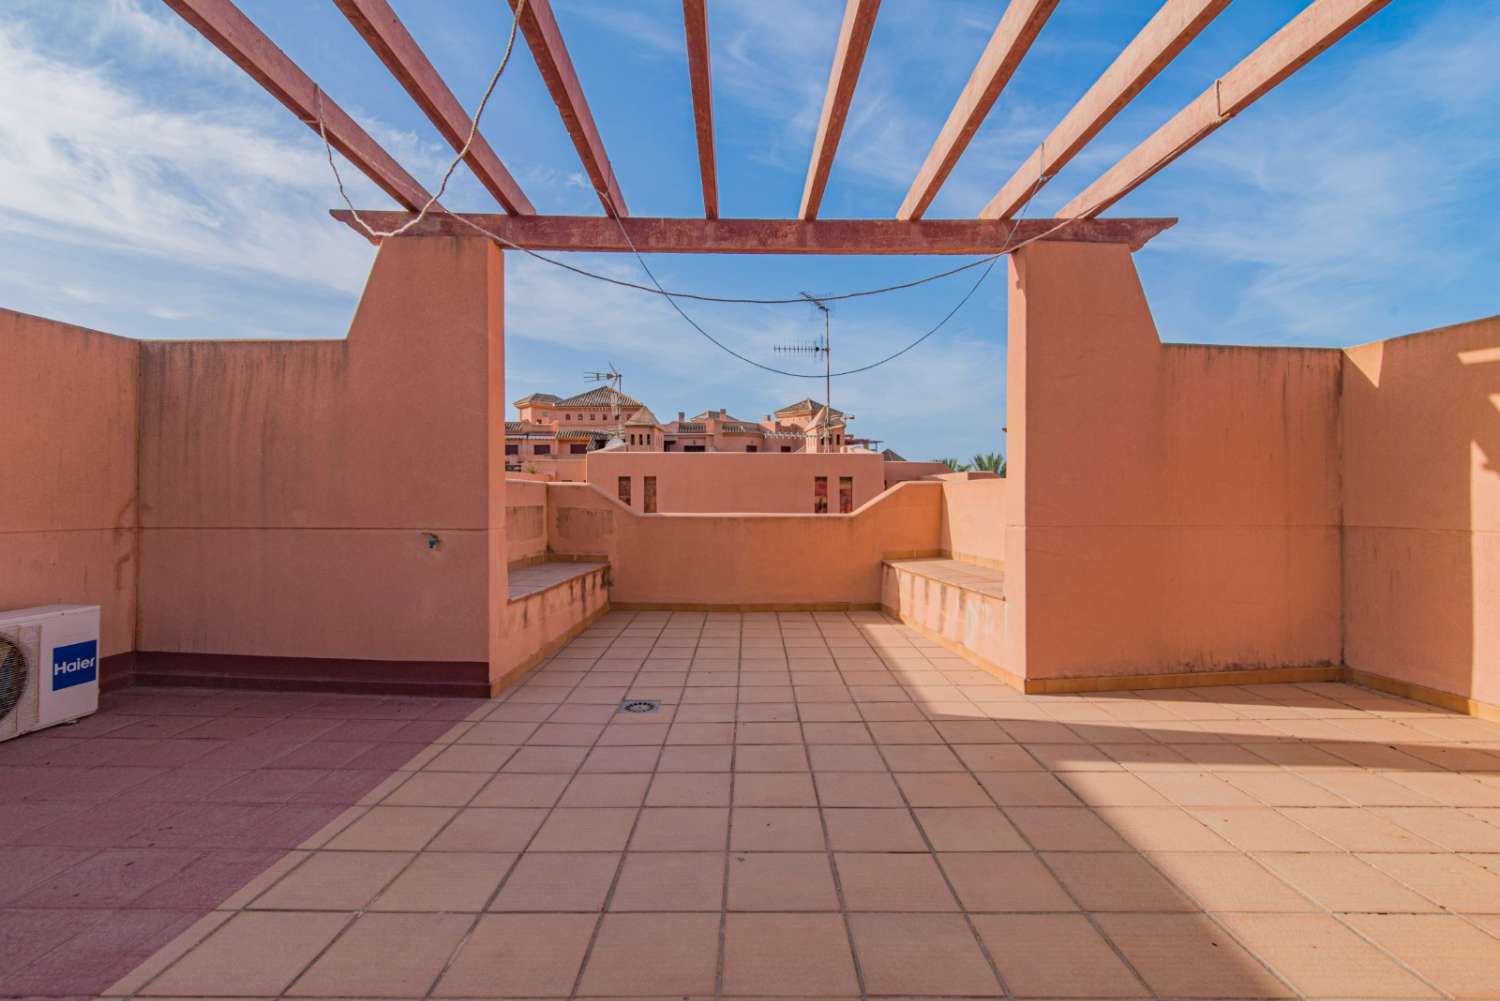 Lägenhet med 3 sovrum i Playa Granada från september till juni